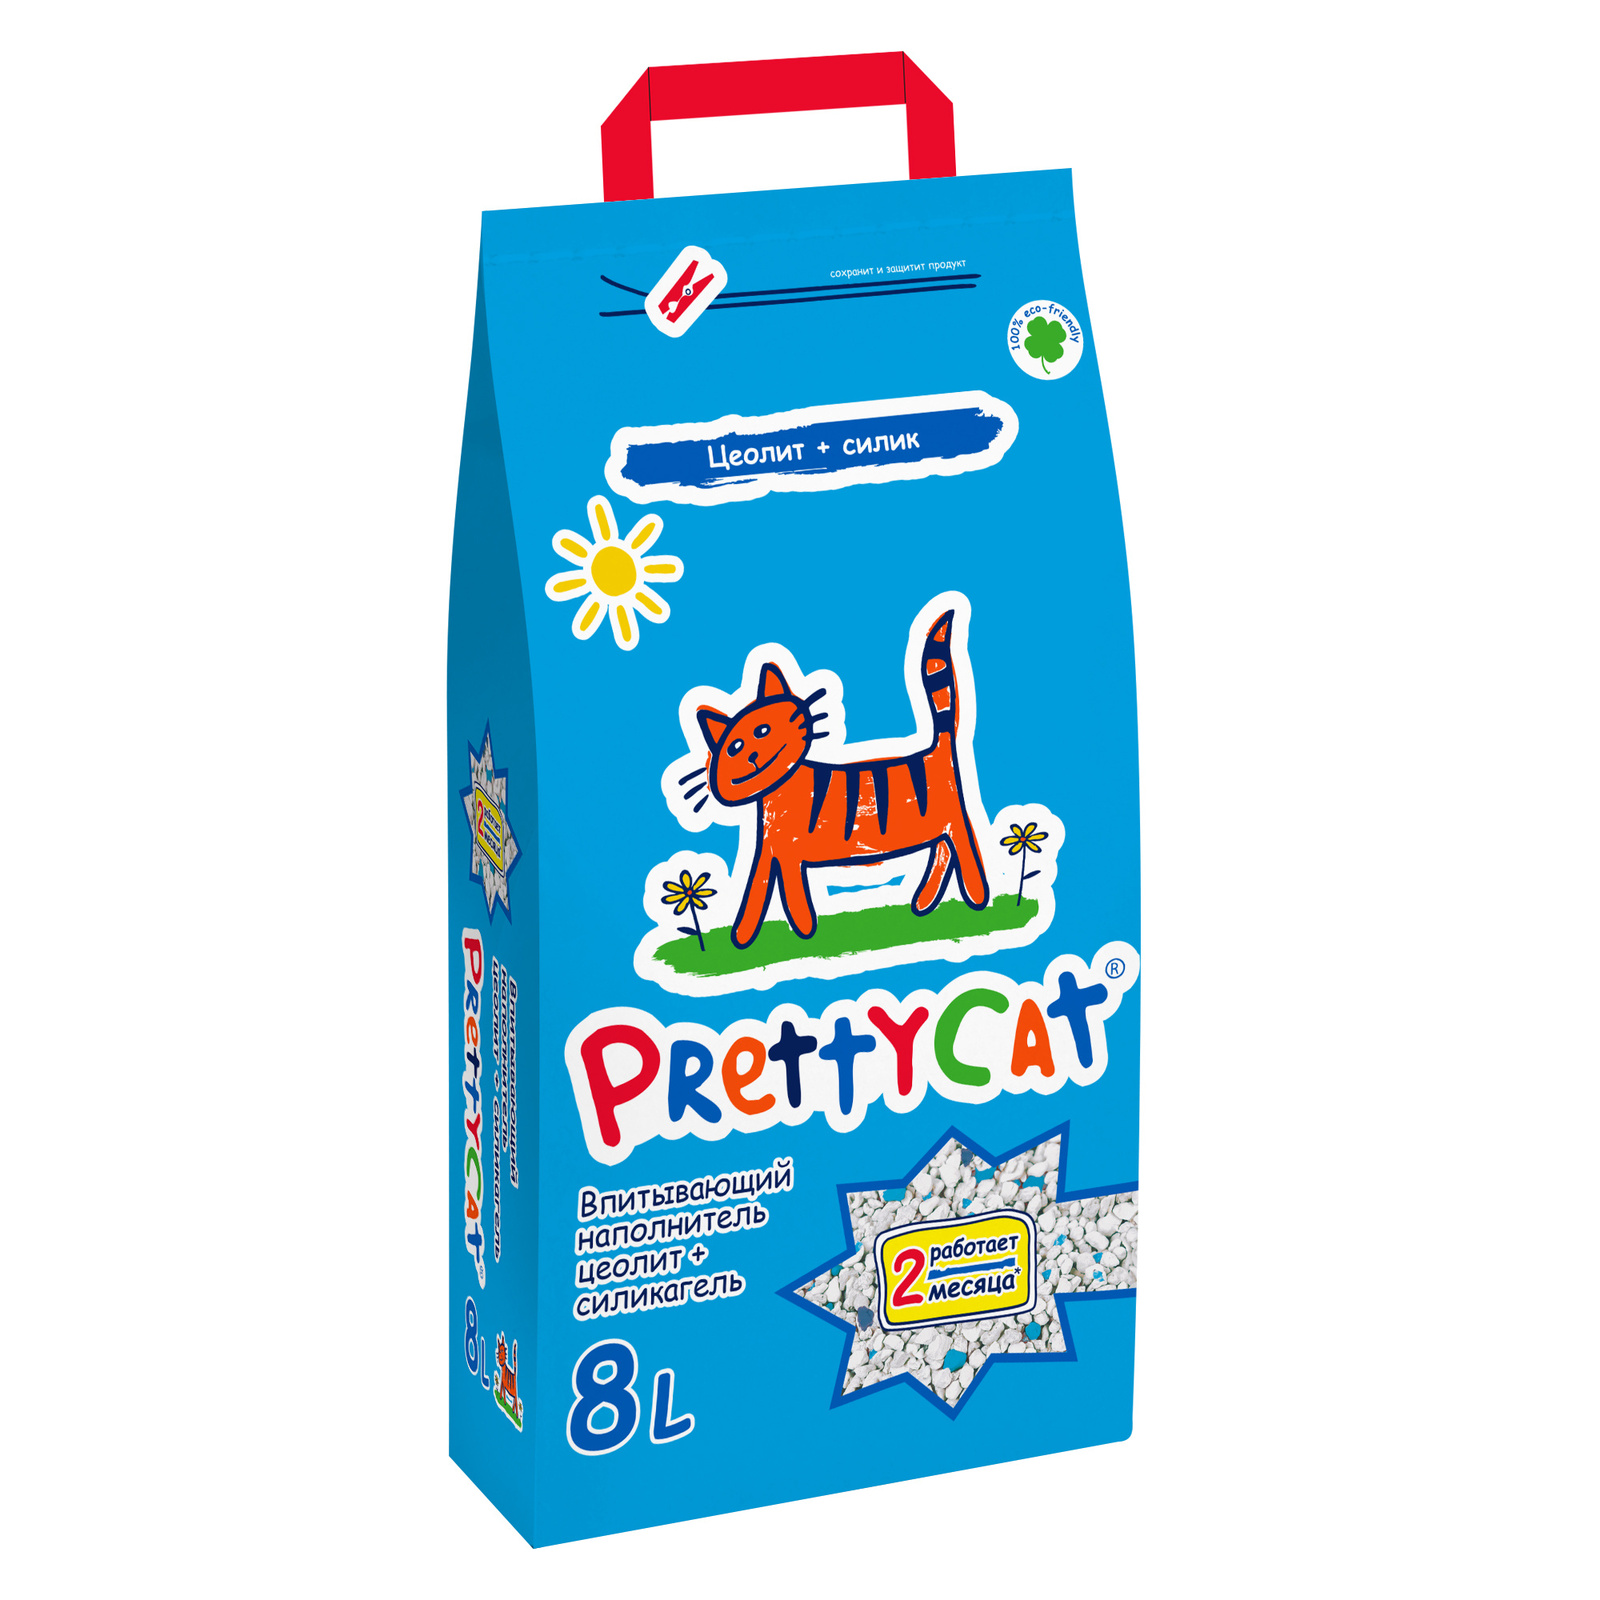 PrettyCat PrettyCat наполнитель впитывающий для кошачьих туалетов (10 кг) prettycat prettycat наполнитель впитывающий для кошачьих туалетов 10 кг